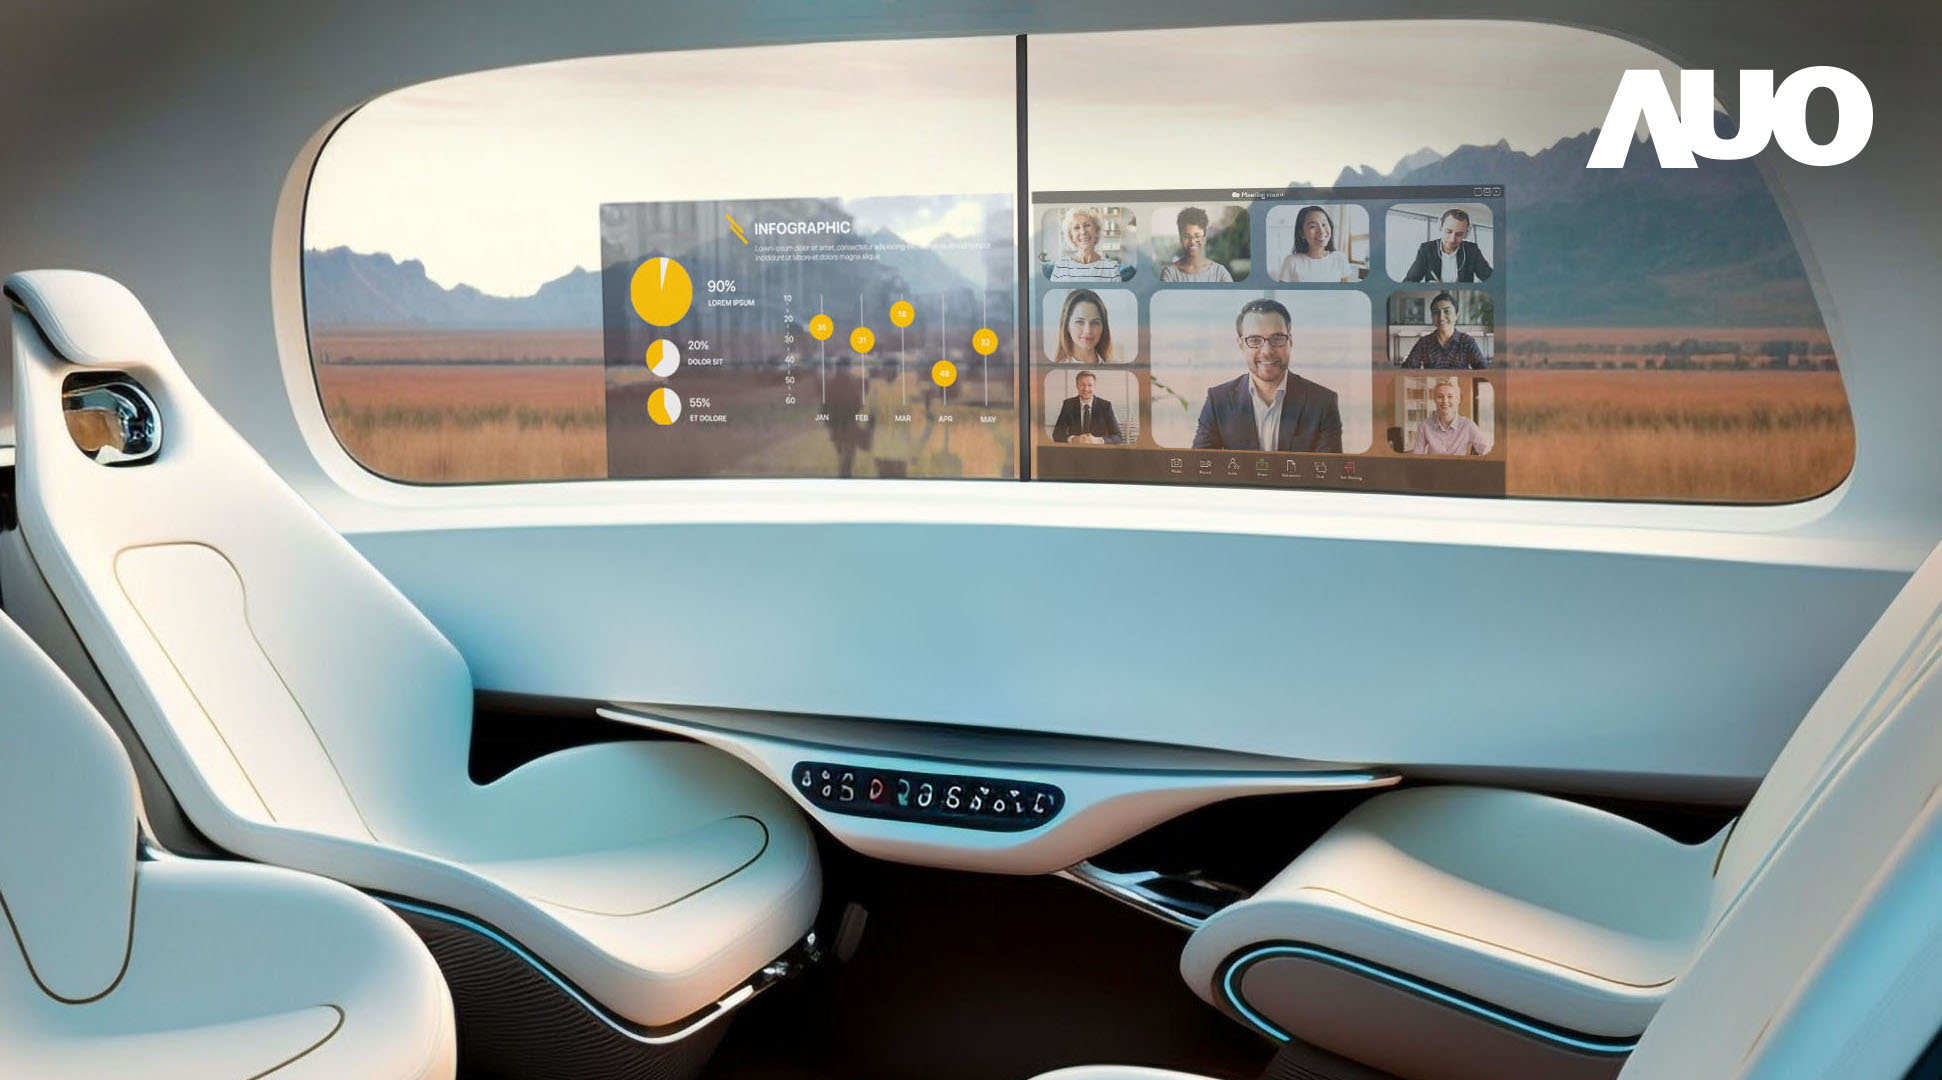 尊龙凯时“交互式透明智能車窗”將高透明、高亮度、清晰的Micro LED顯示器整合到車側窗中，滿足使用者在車內的多元需求，榮獲CES“最佳創新獎”殊榮